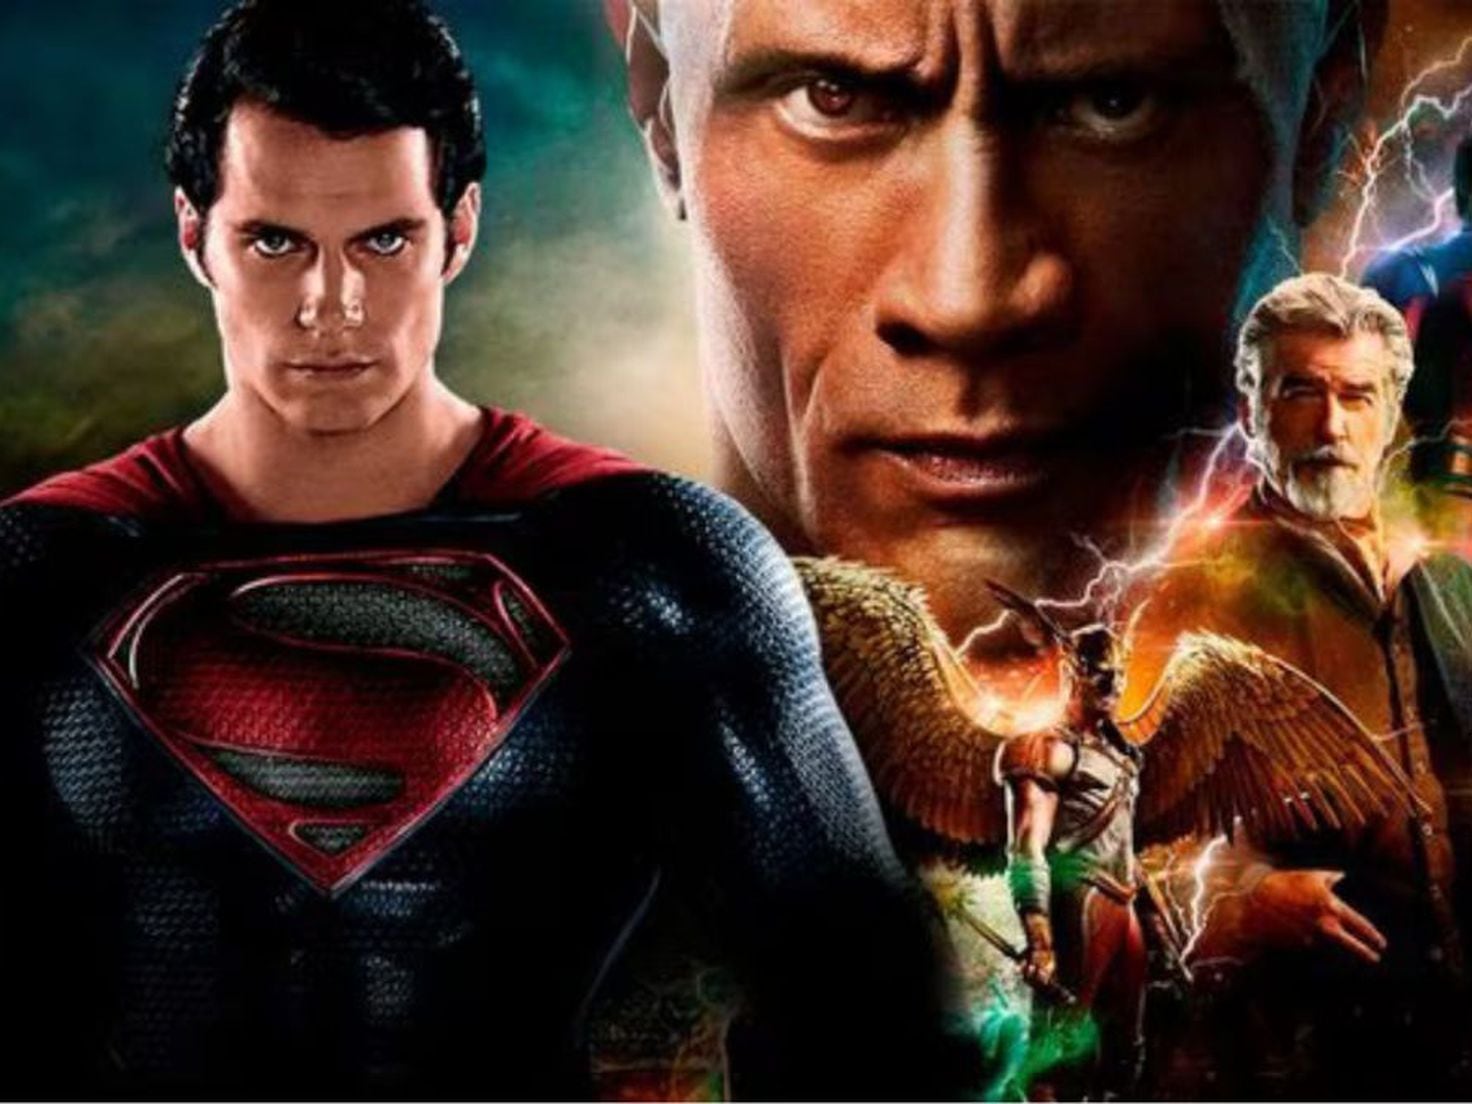 Henry Cavill é o 'melhor Superman de todos os tempos' para Dwayne